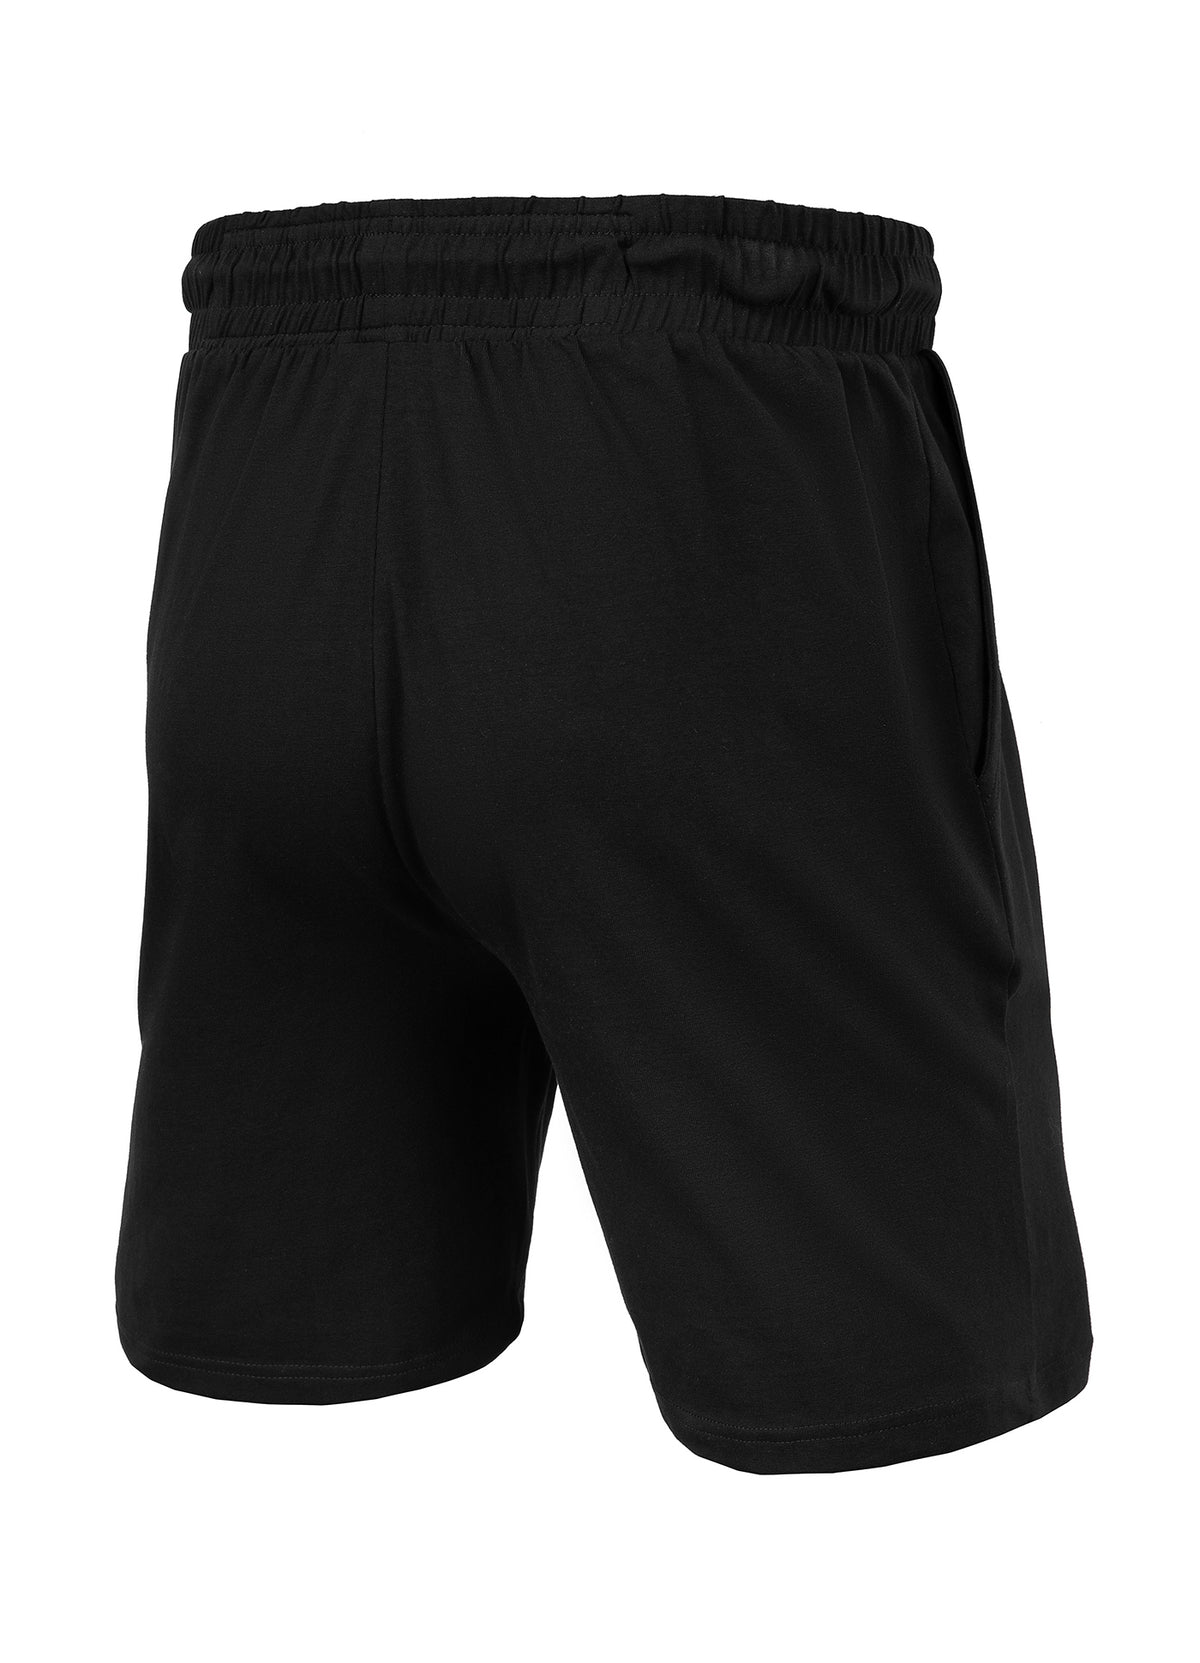 Pitbull Gym Black Shorts